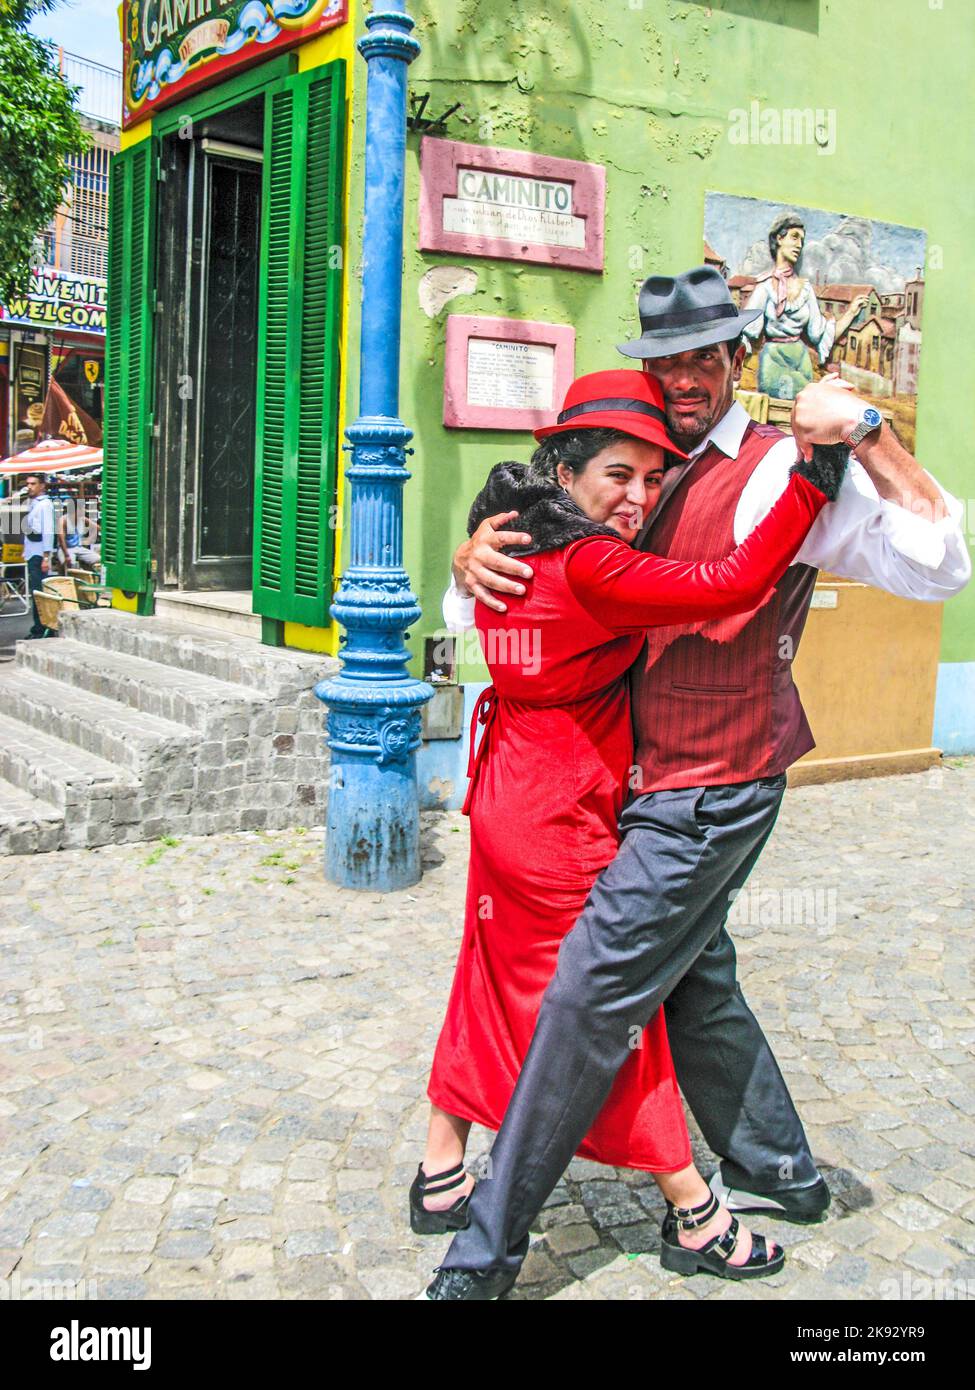 BUENOS AIRES, ARGENTINIEN - 26. JAN 2015: tangotänzerin posiert für Touristen in der Caminito Street, Buenos Aires, Argentinien. Caminito ist eine traditionelle Gasse, l Stockfoto